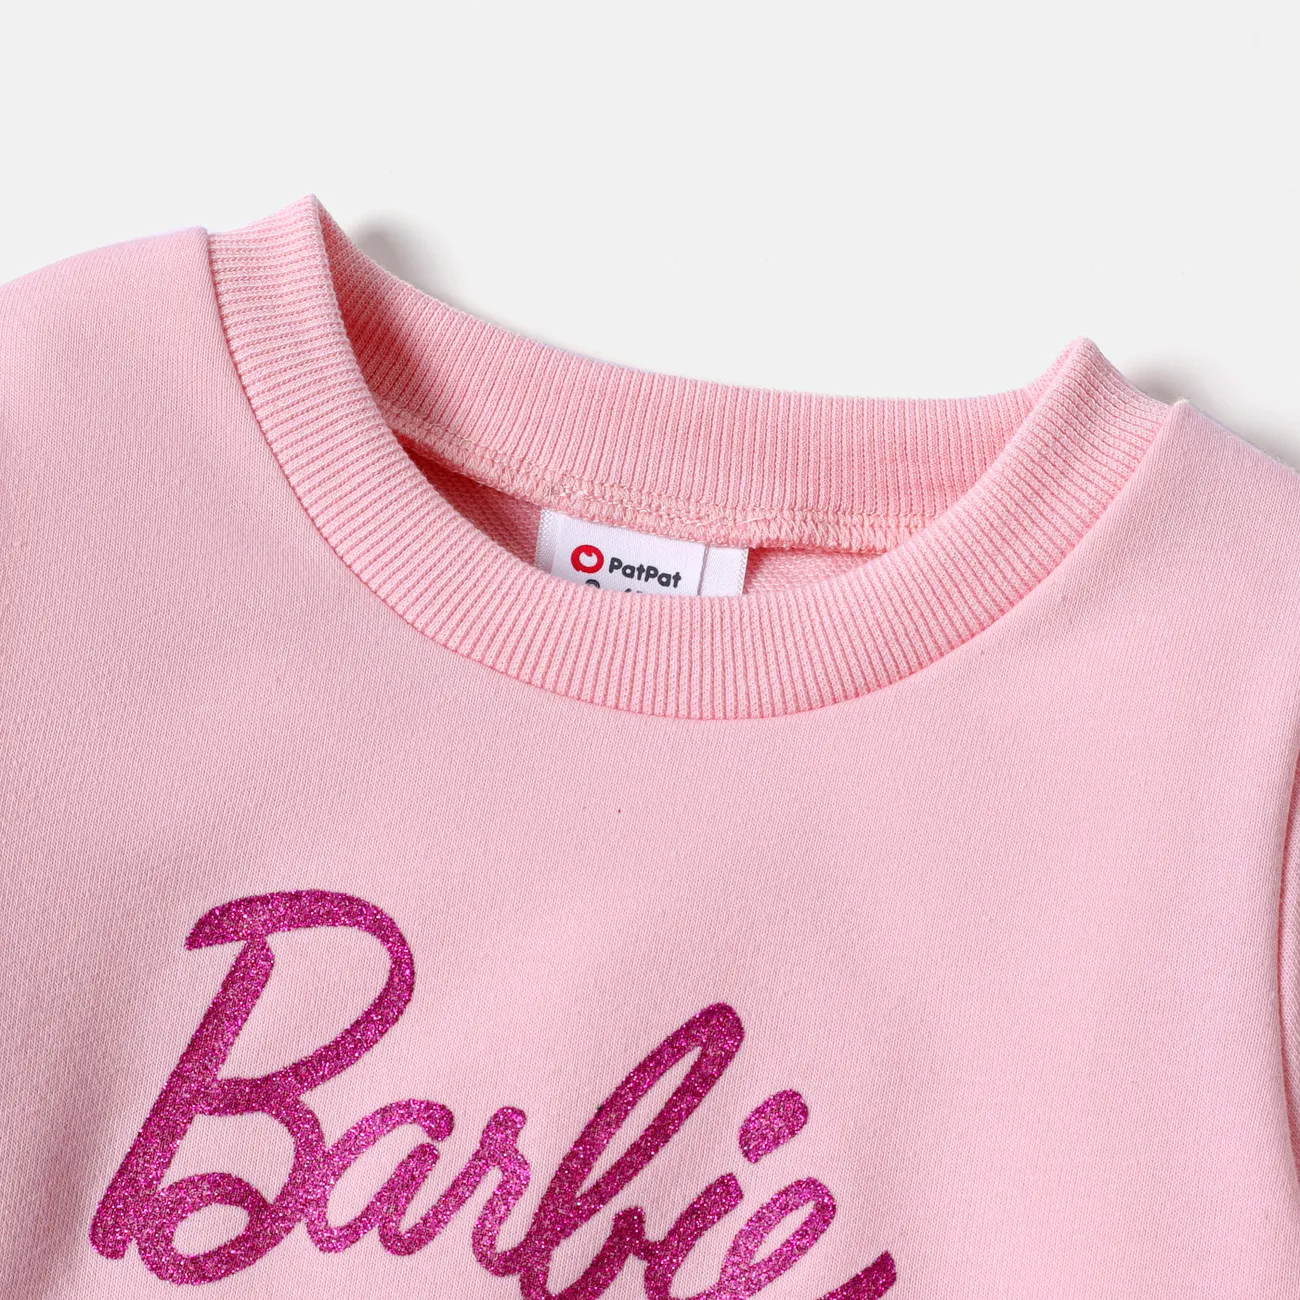 Barbie Menina Bonito Conjuntos Rosa big image 1